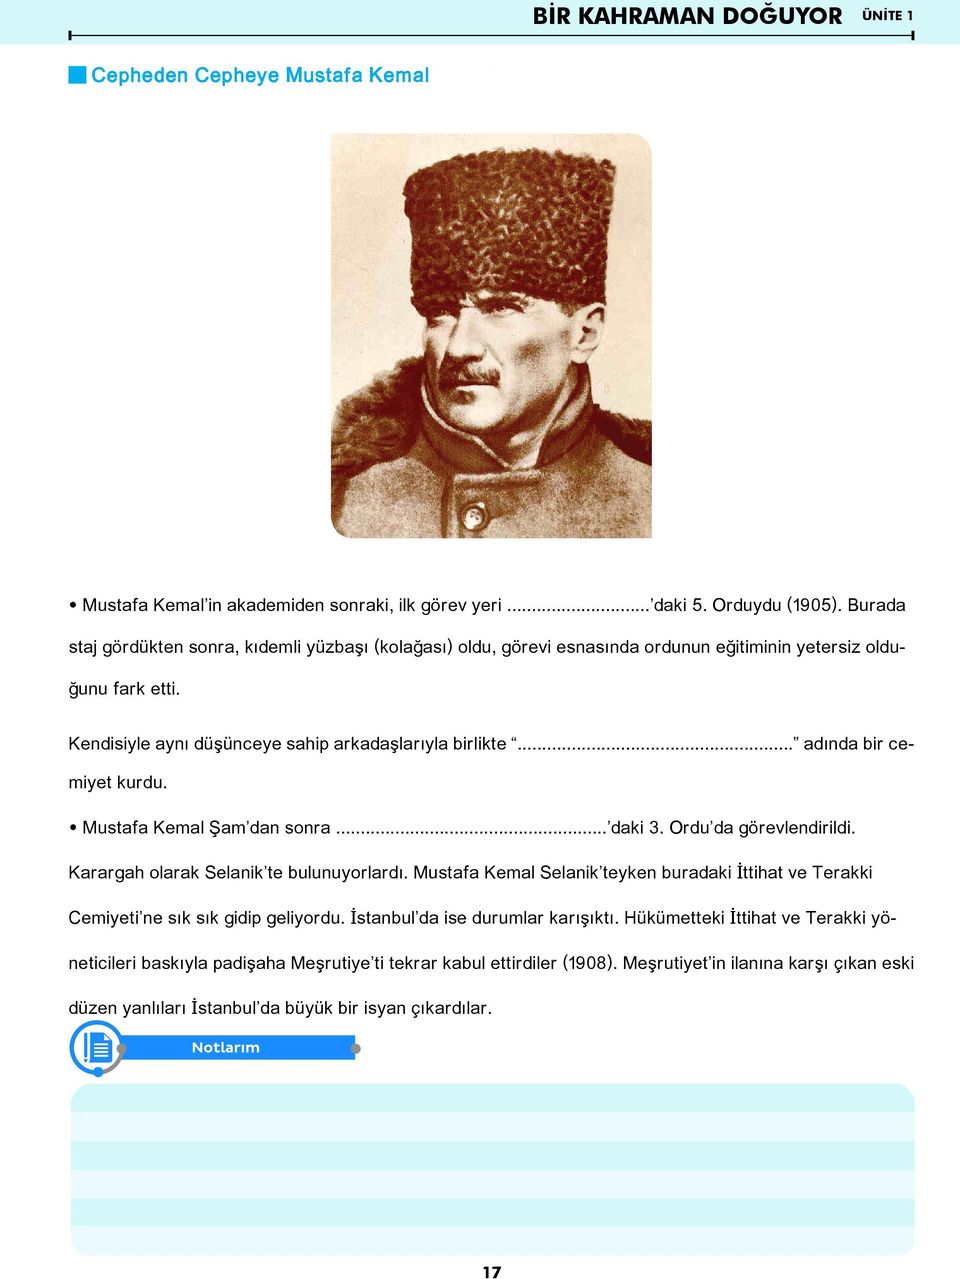 .. adında bir cemiyet kurdu. œ Mustafa Kemal Şam dan sonra... daki 3. Ordu da görevlendirildi. Karargah olarak Selanik te bulunuyorlardı.